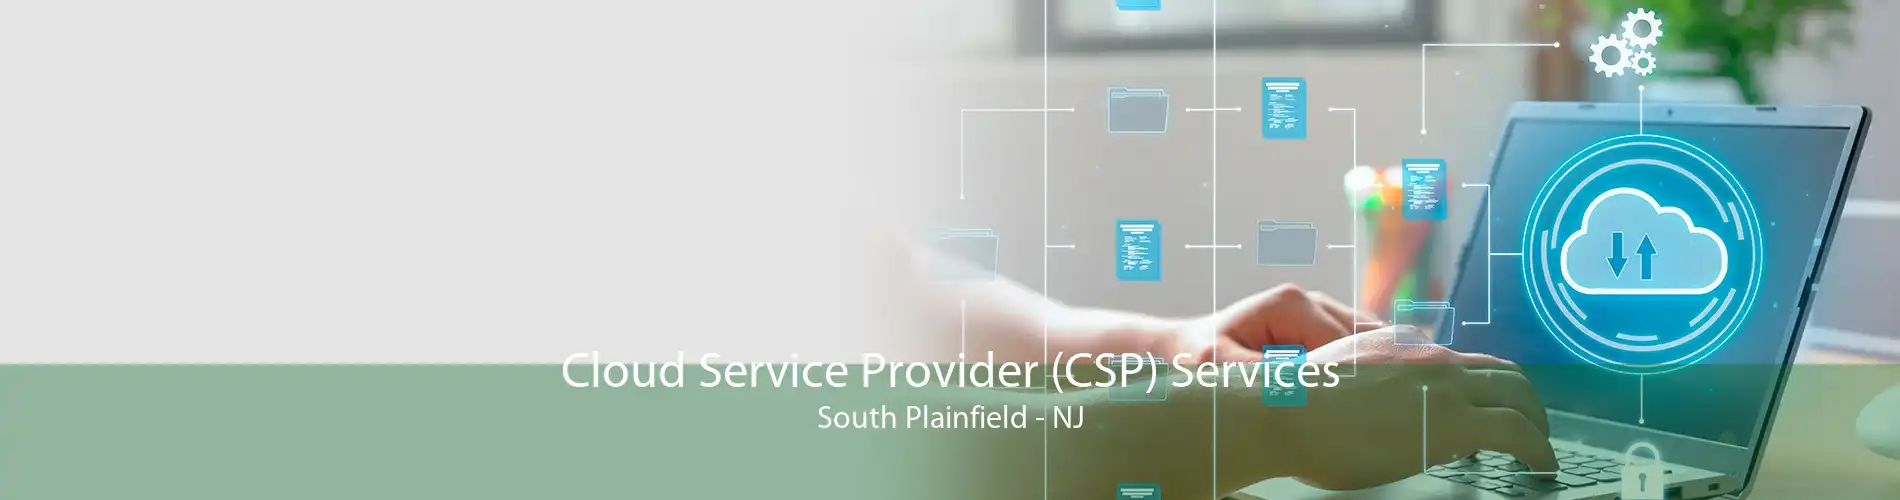 Cloud Service Provider (CSP) Services South Plainfield - NJ